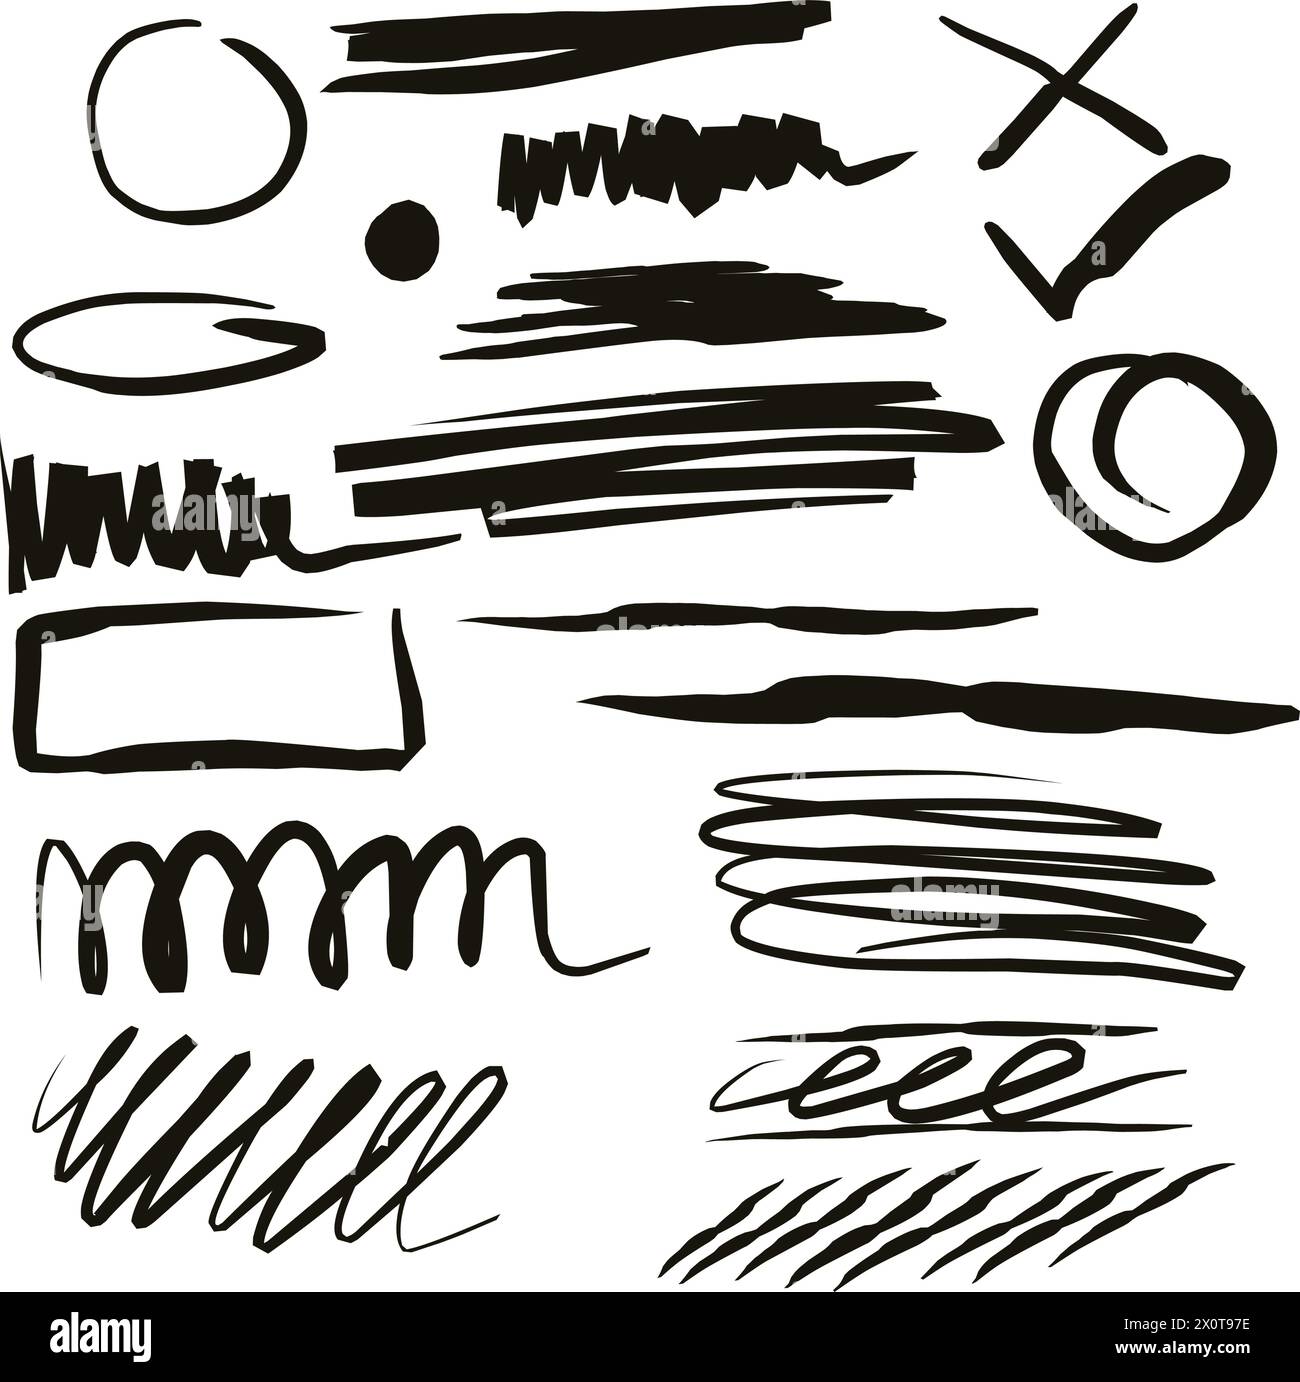 Vektor-Bleistiftsatz von Grunge-Strichen, Kreisen, Pfeilen, Herzen, Spritzern, Farbflecken, Bleistiftzeichnungen und andere kreative Designs. Perfekt für Ausdrucke Stock Vektor